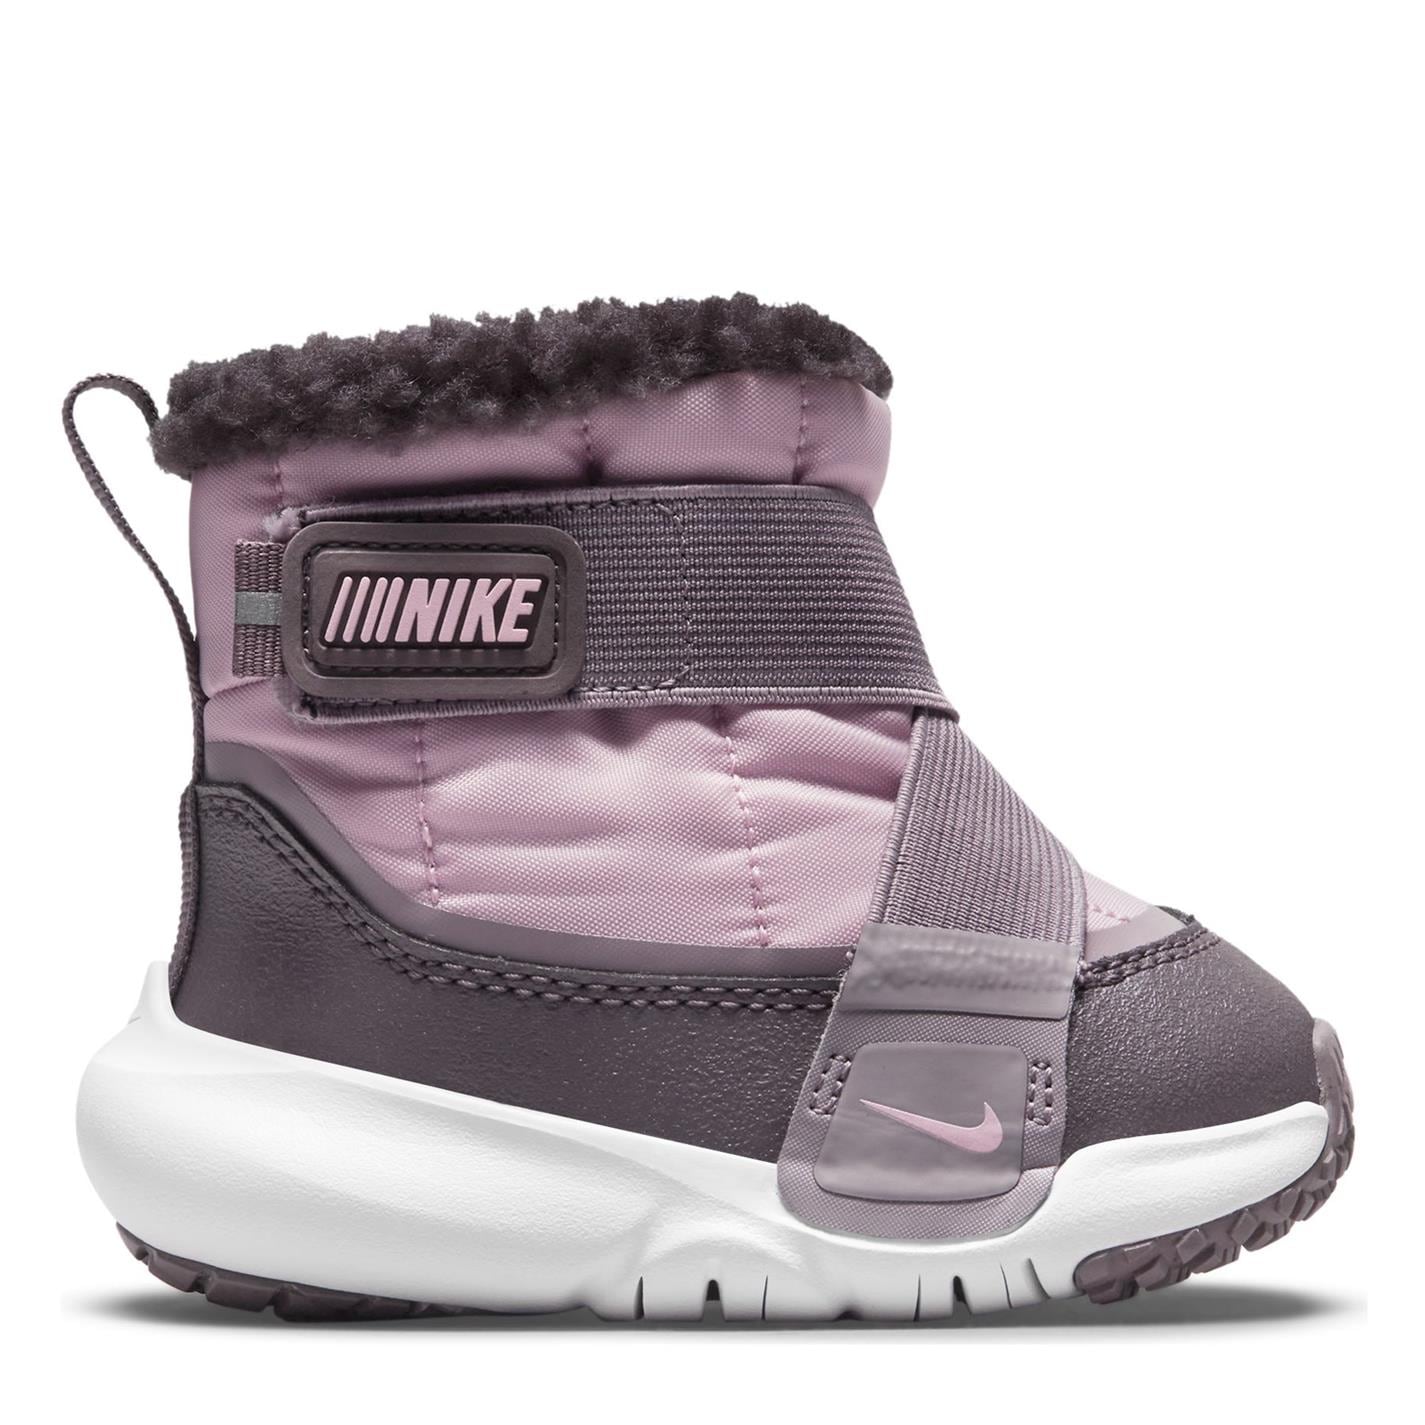 Ghete Nike Advance pentru fete pentru Bebelusi roz violet